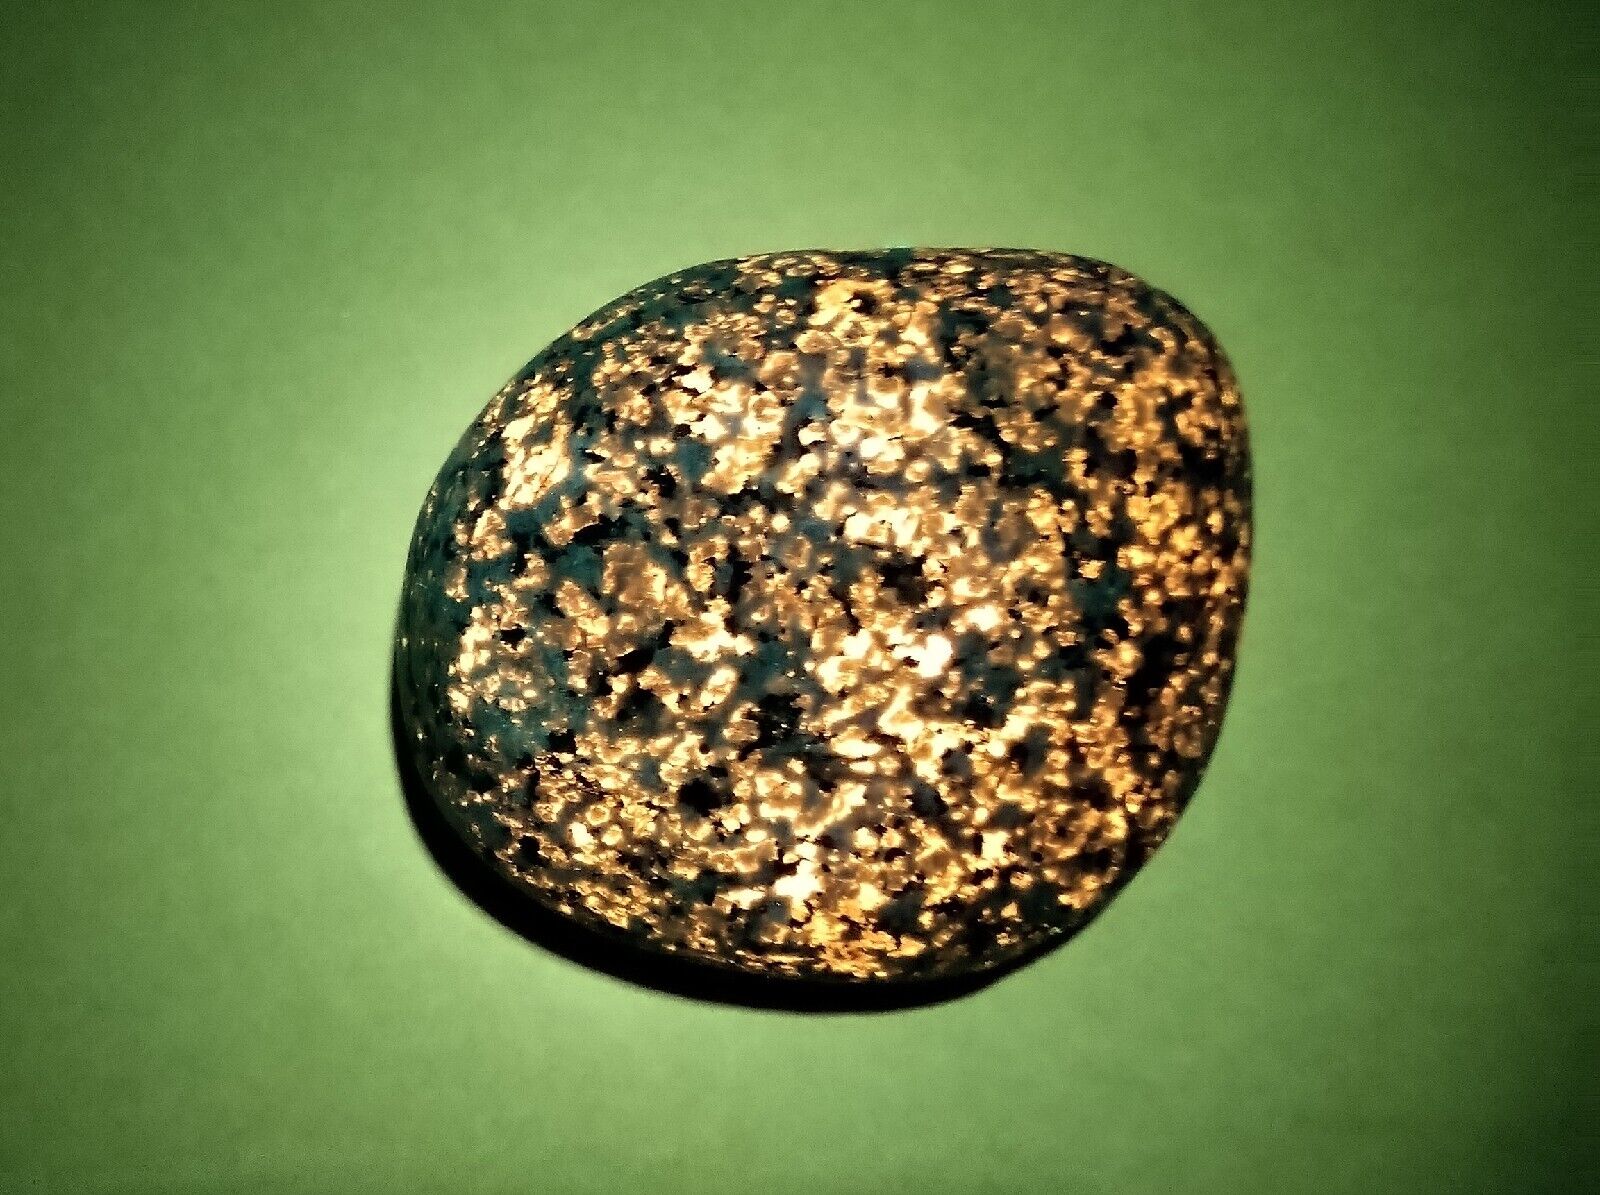  FLUORESCENT SODALITE ( YOOPERLITE )  6.2 oz.   A Bright, Nice Coverage Stone 